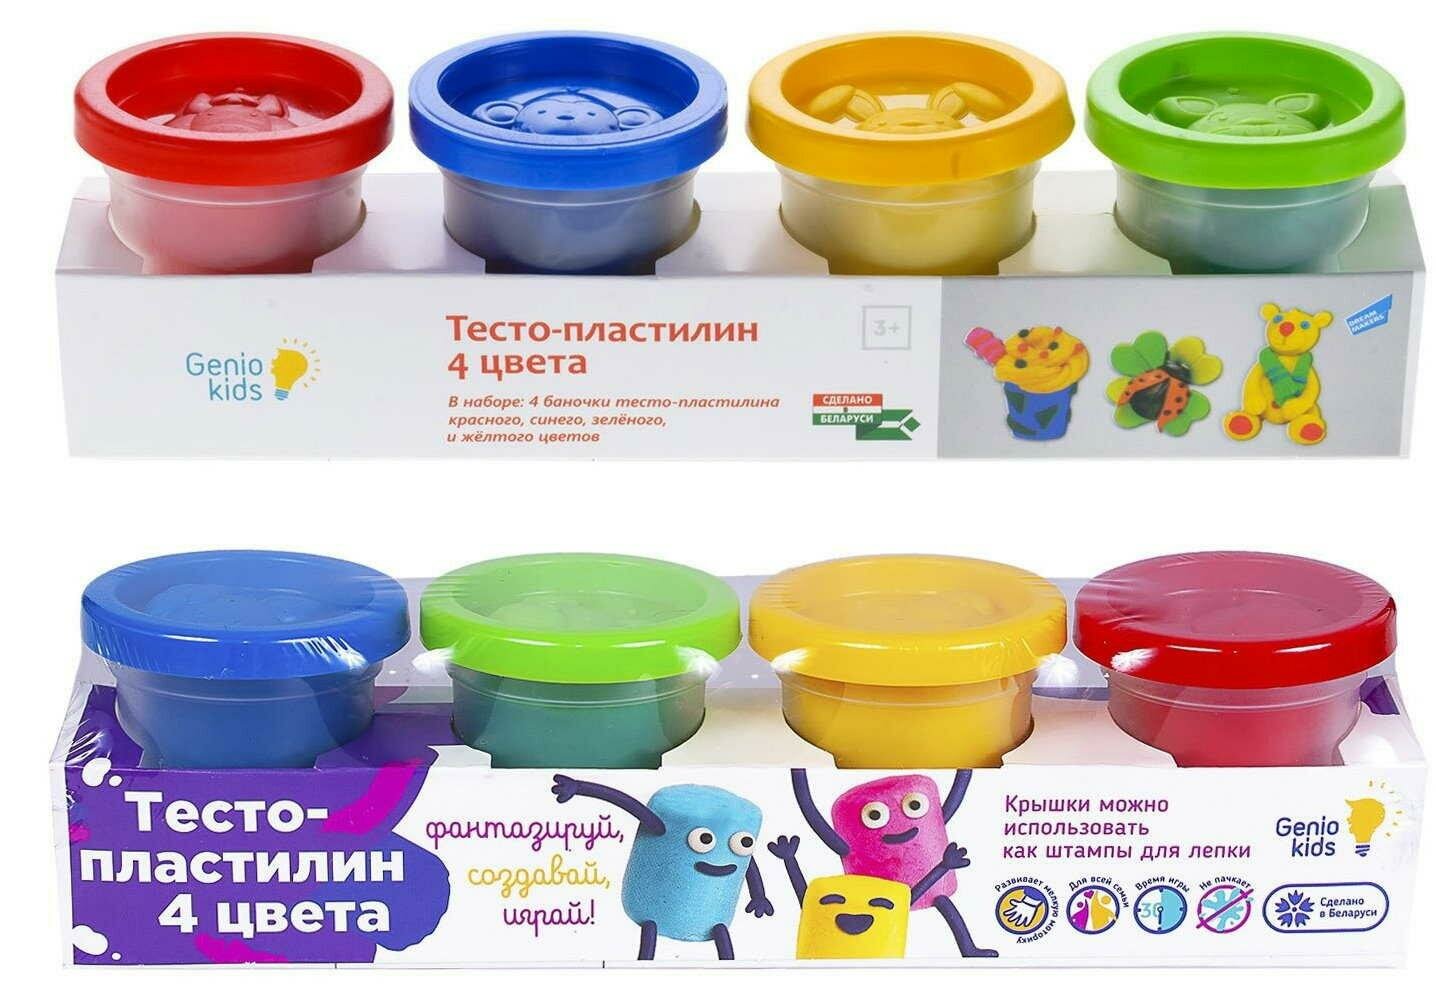 Тесто-пластилин Genio Kids 4 цвета по 50 г, в коробке